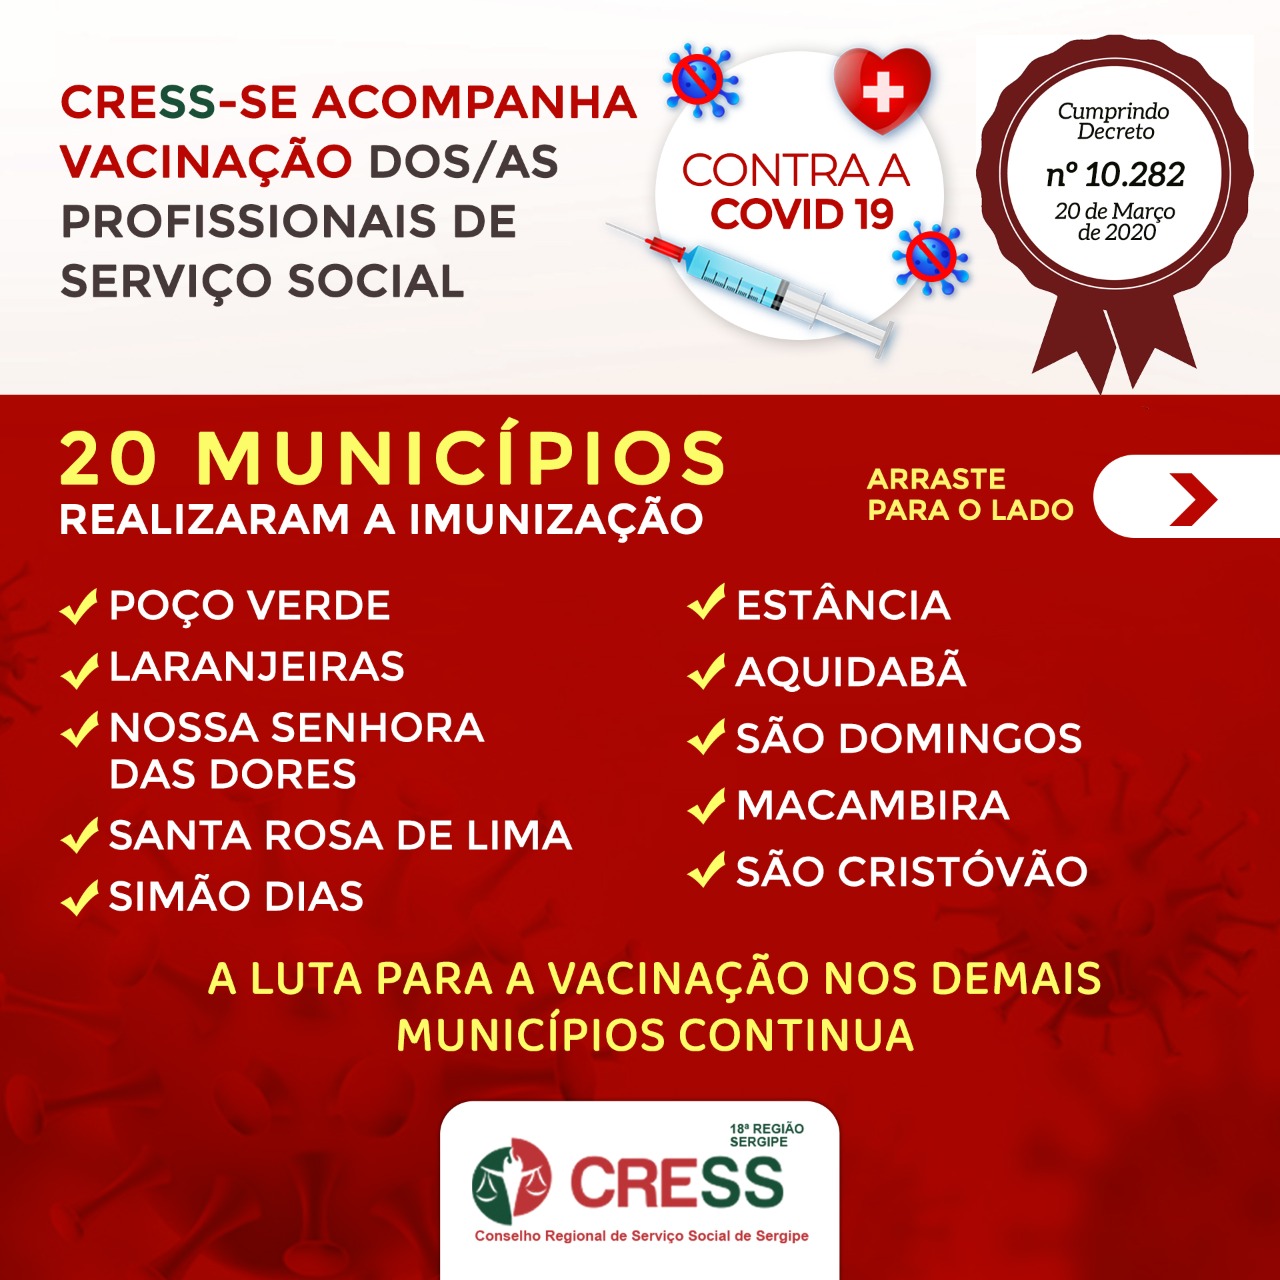 CRESS-SE continua pressionando pela vacinação dos/as profissionais de Serviço Social contra a Covid-19